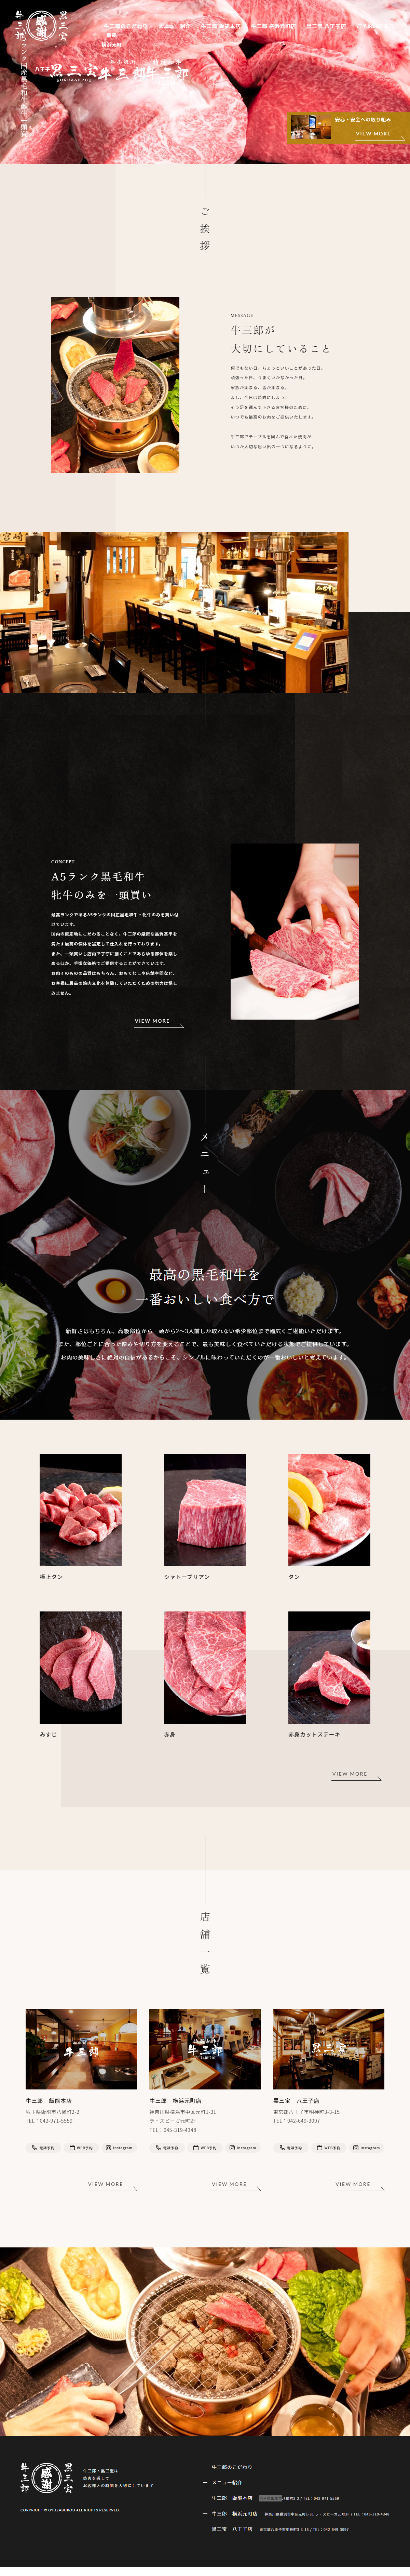 飲食店・カフェ コーポレートサイト制作 WEBデザイン参考ギャラリー 焼肉 牛三郎